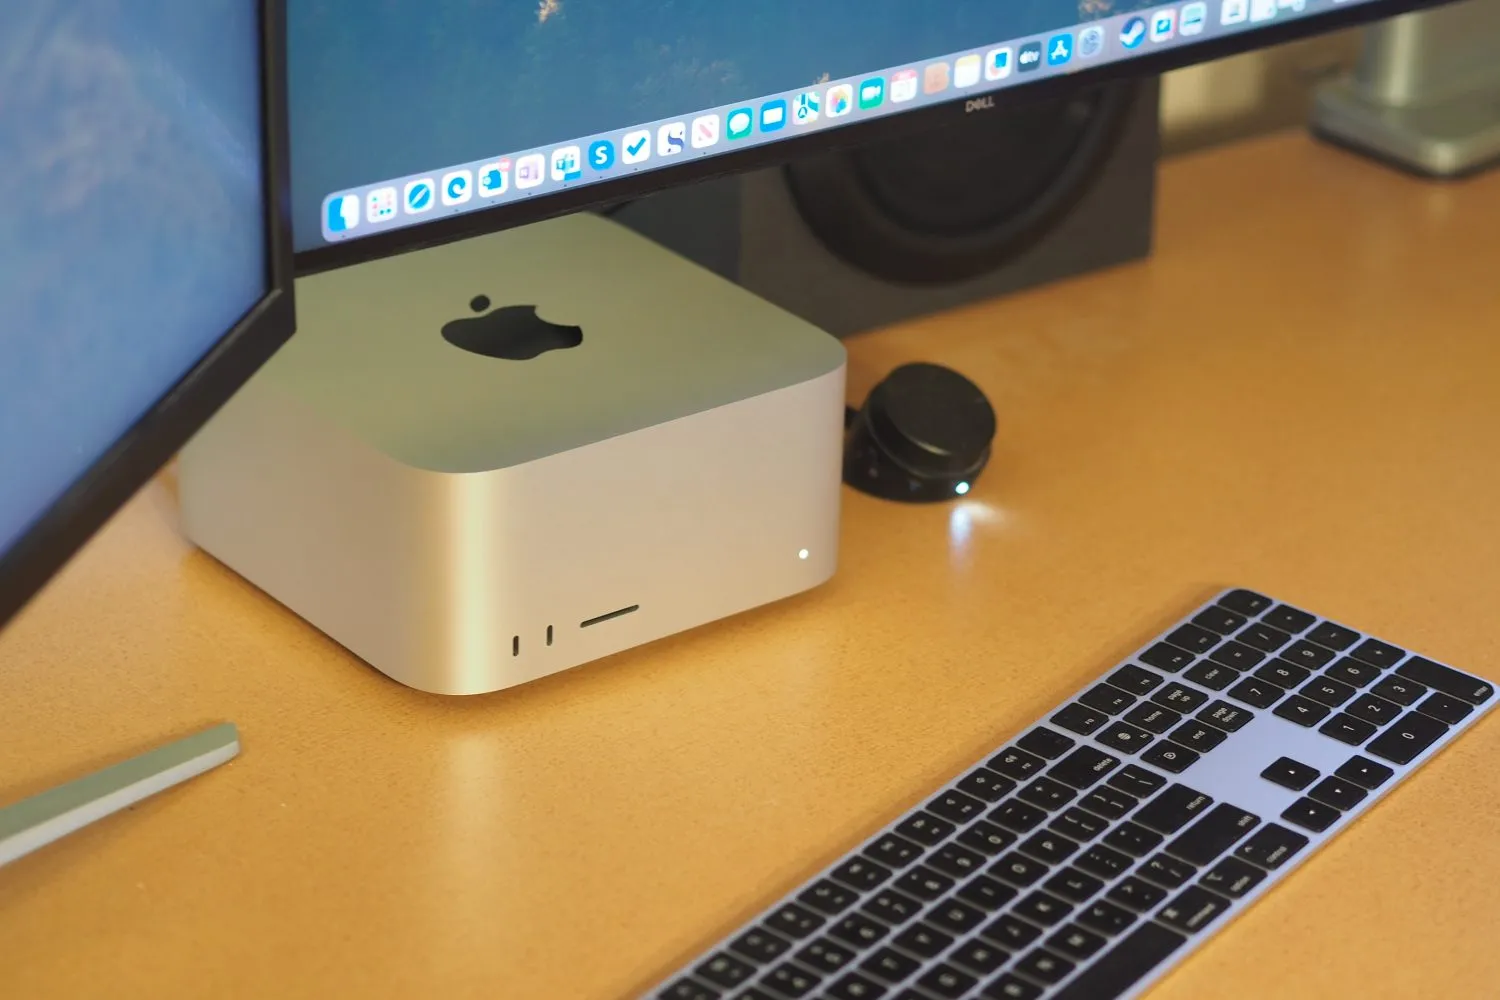 Visão superior do Apple Mac Studio mostrando o PC e o teclado.